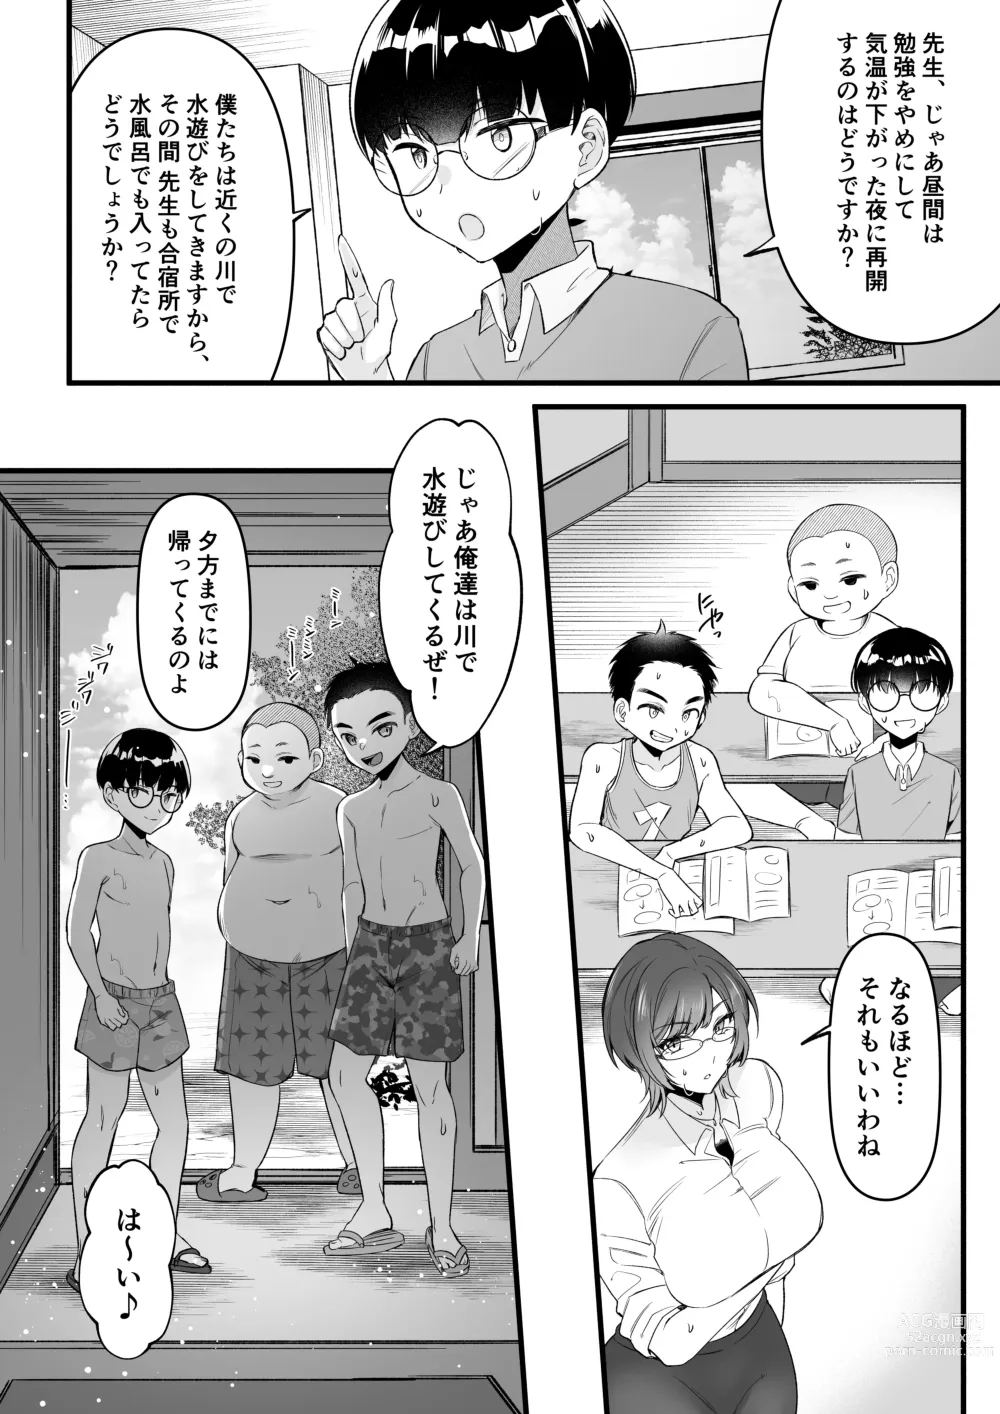 Page 7 of doujinshi Natsu Gasshuku Innocence